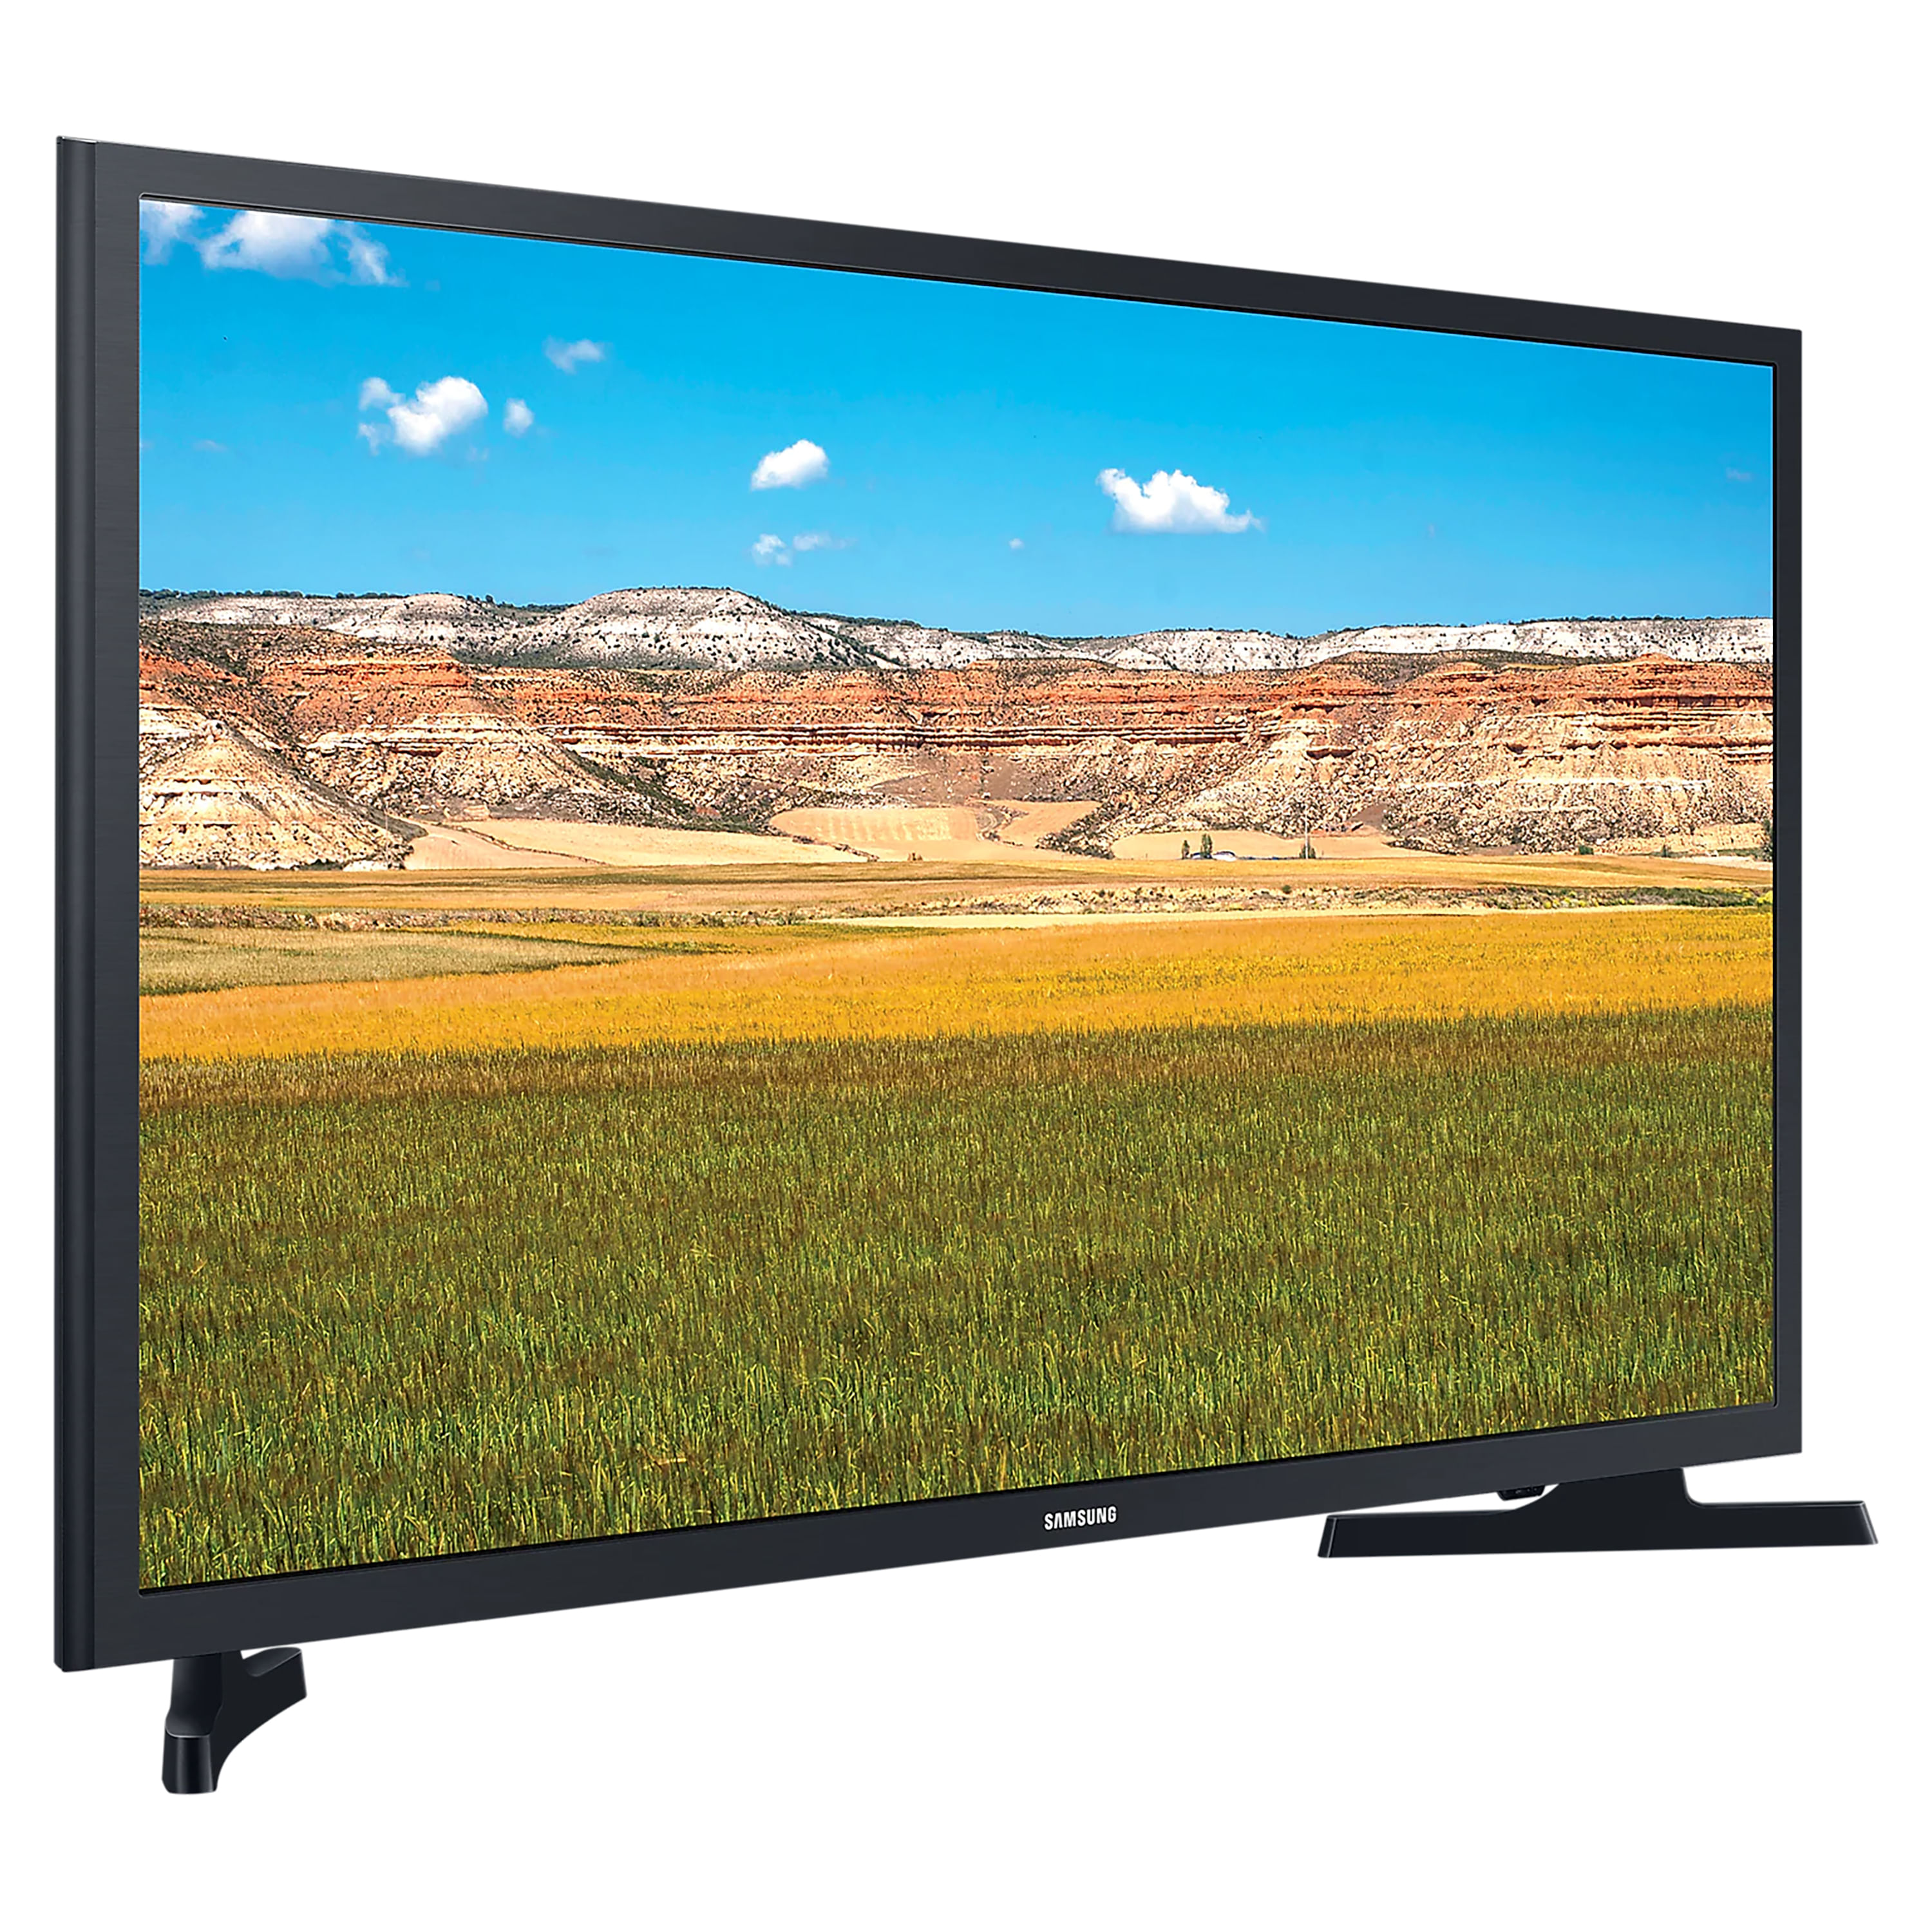 Comprar Pantalla Smart TV Samsung Led De 32 Pulgadas, Modelo